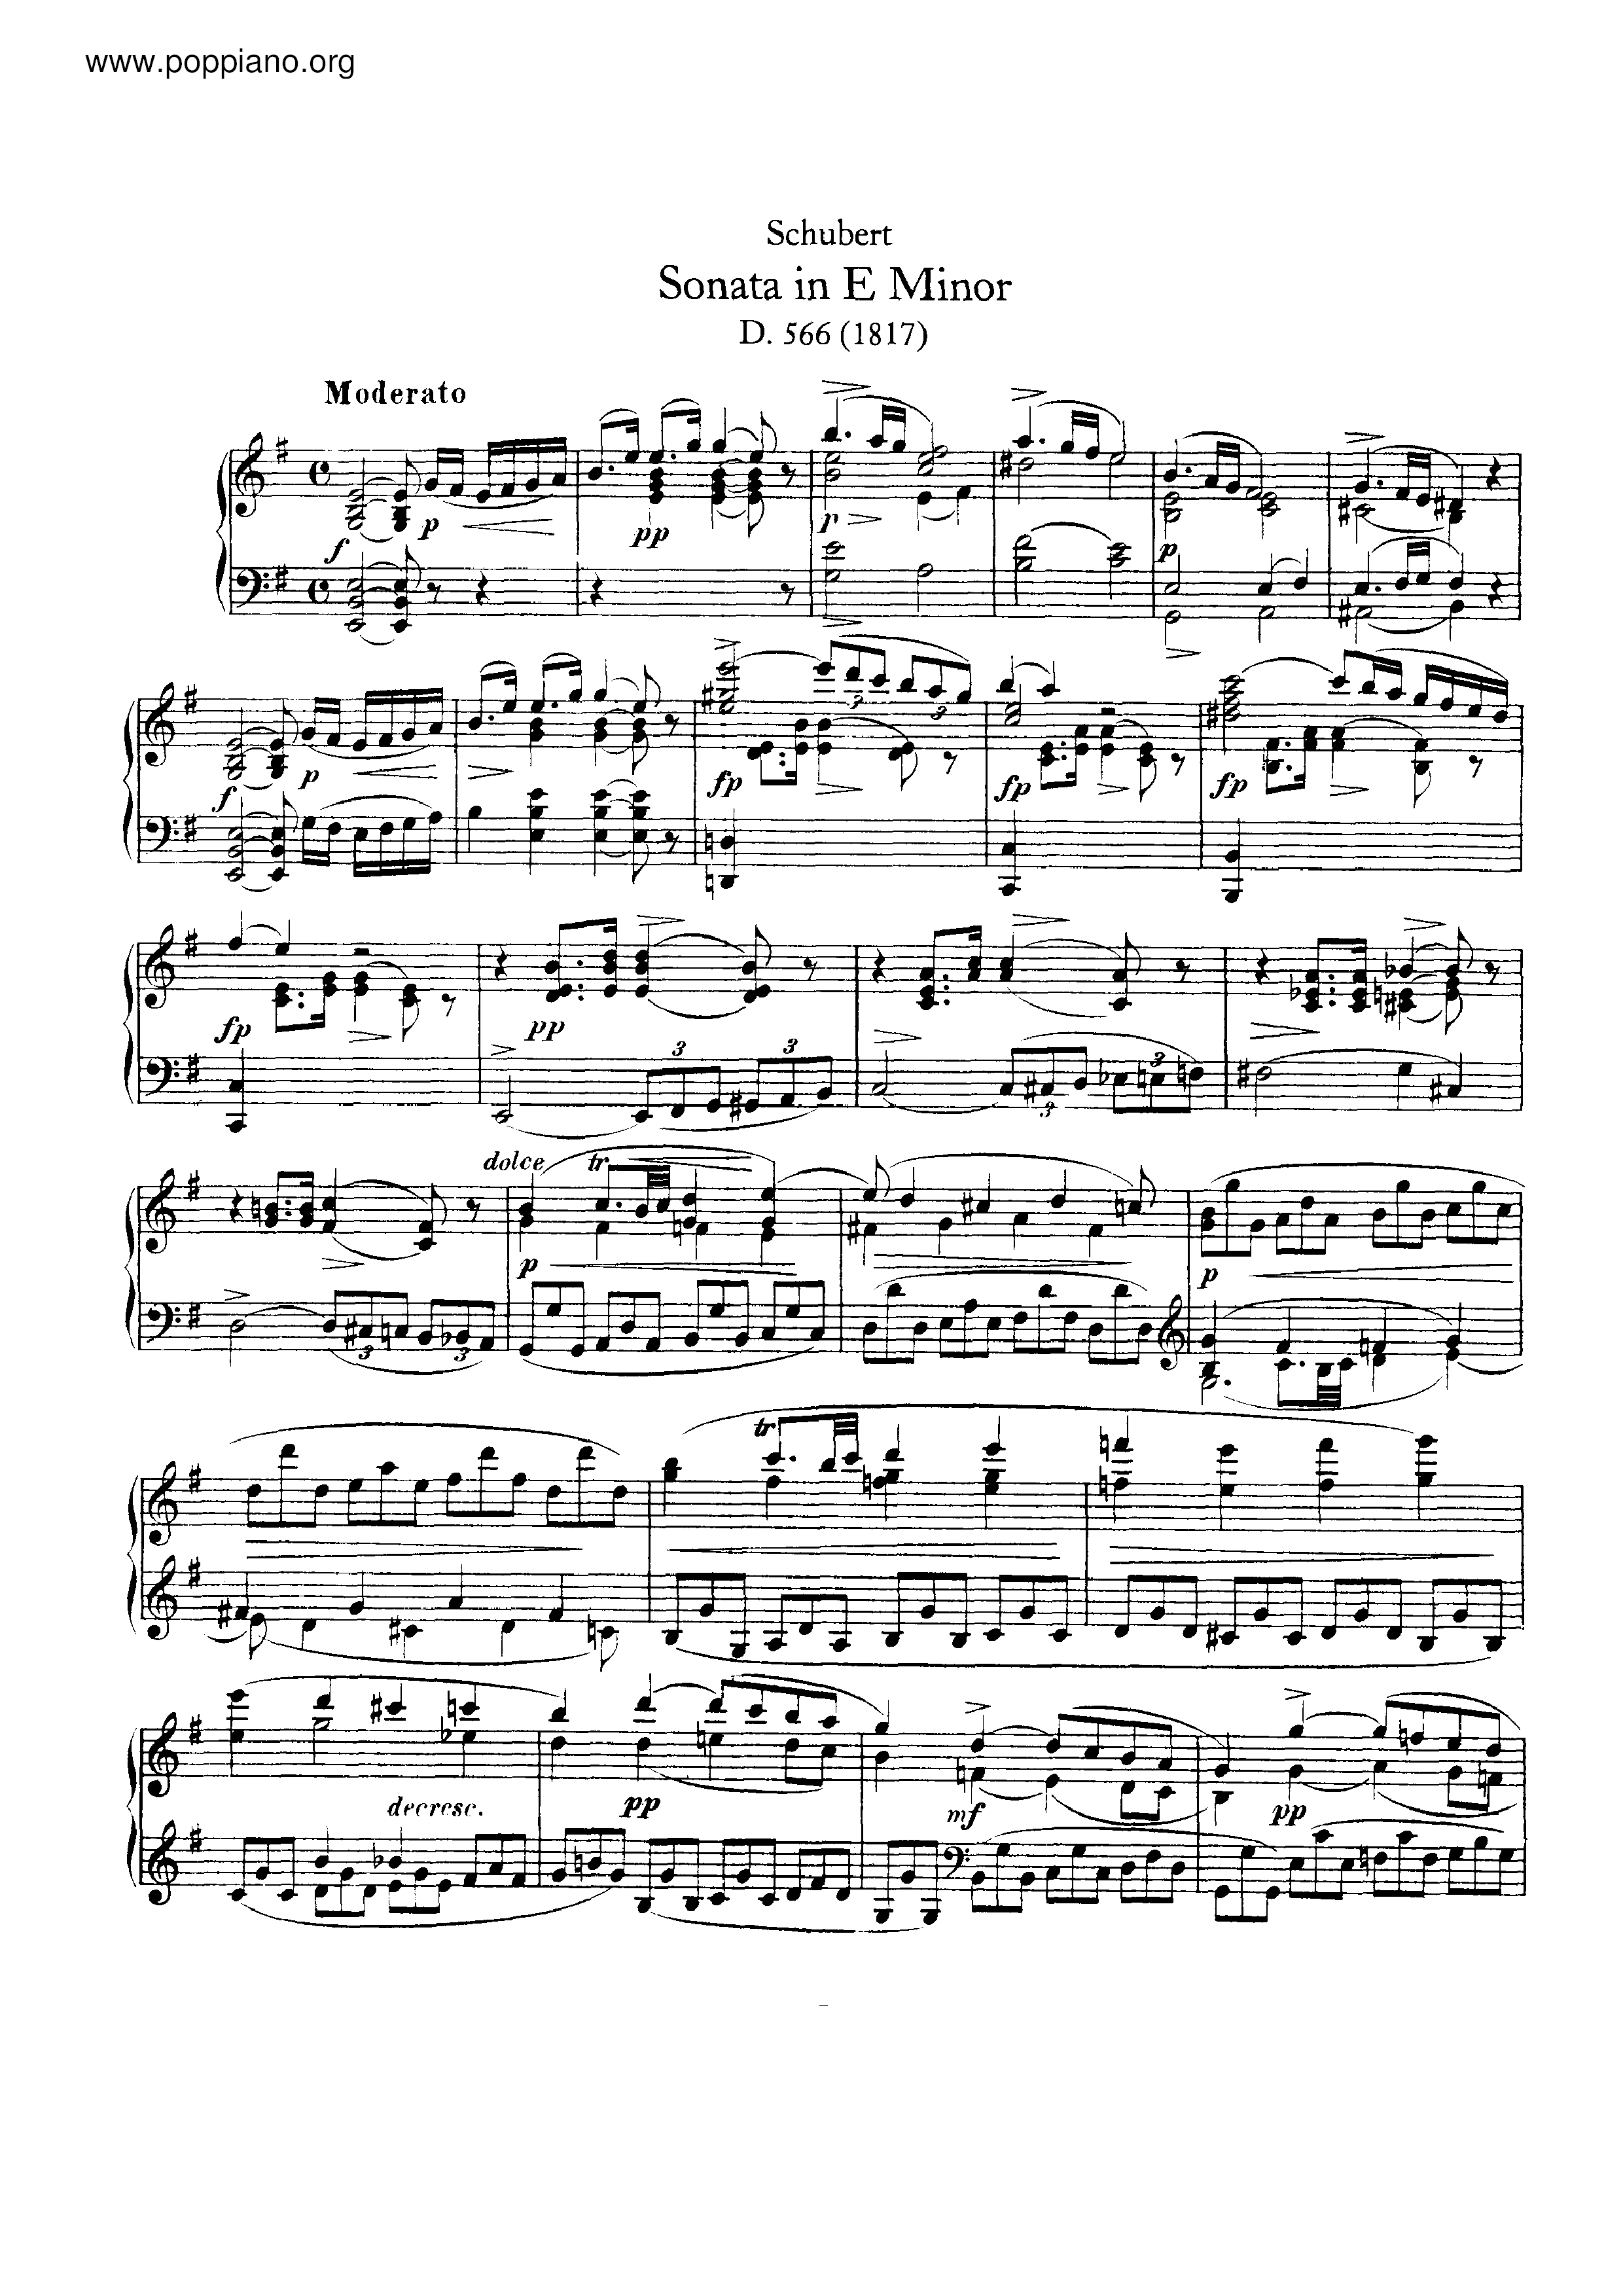 Piano Sonata in E minor, D.566 Score